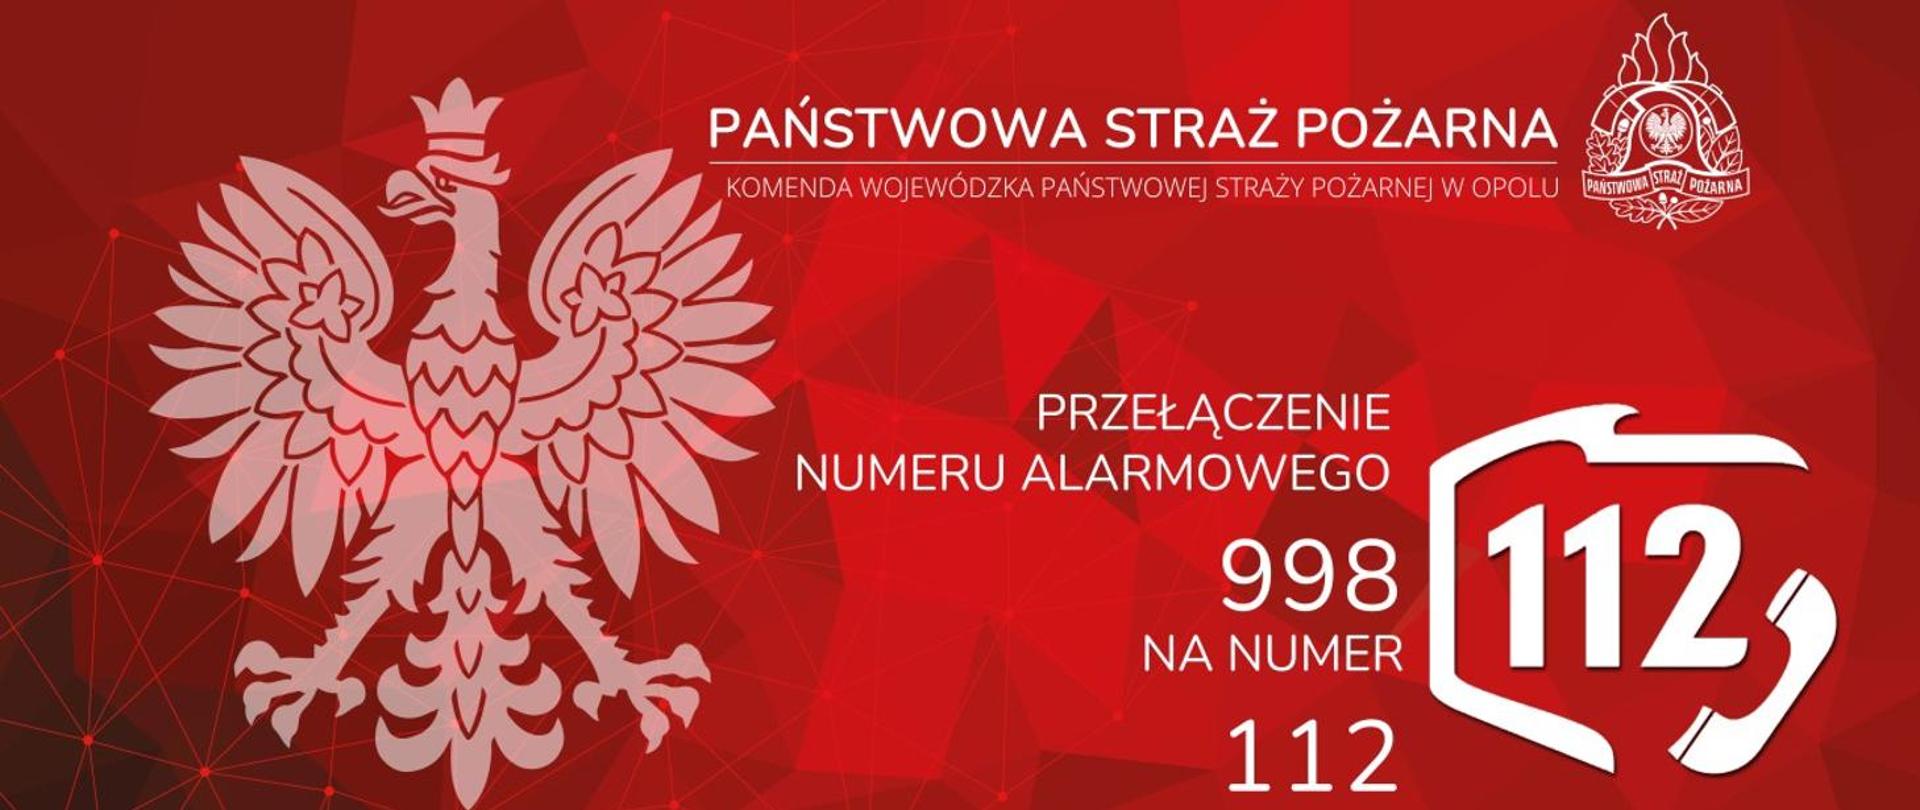 Na czerwonym tle po lewej godło RP, na górze napis: Państwowa Straż Pożarna, pod nim napis Komenda Wojewódzka Państwowej Straży Pożarnej w Opolu. Po prawej Logo PSP.
Pod spodem napis Przełączenie numeru alarmowego 998 na numer 112, a po prawej piktogram numeru 112 - w kształt granic Polski po wschodniej stronie wkomponowana słuchawka telefoniczna , w środku numer 112. 